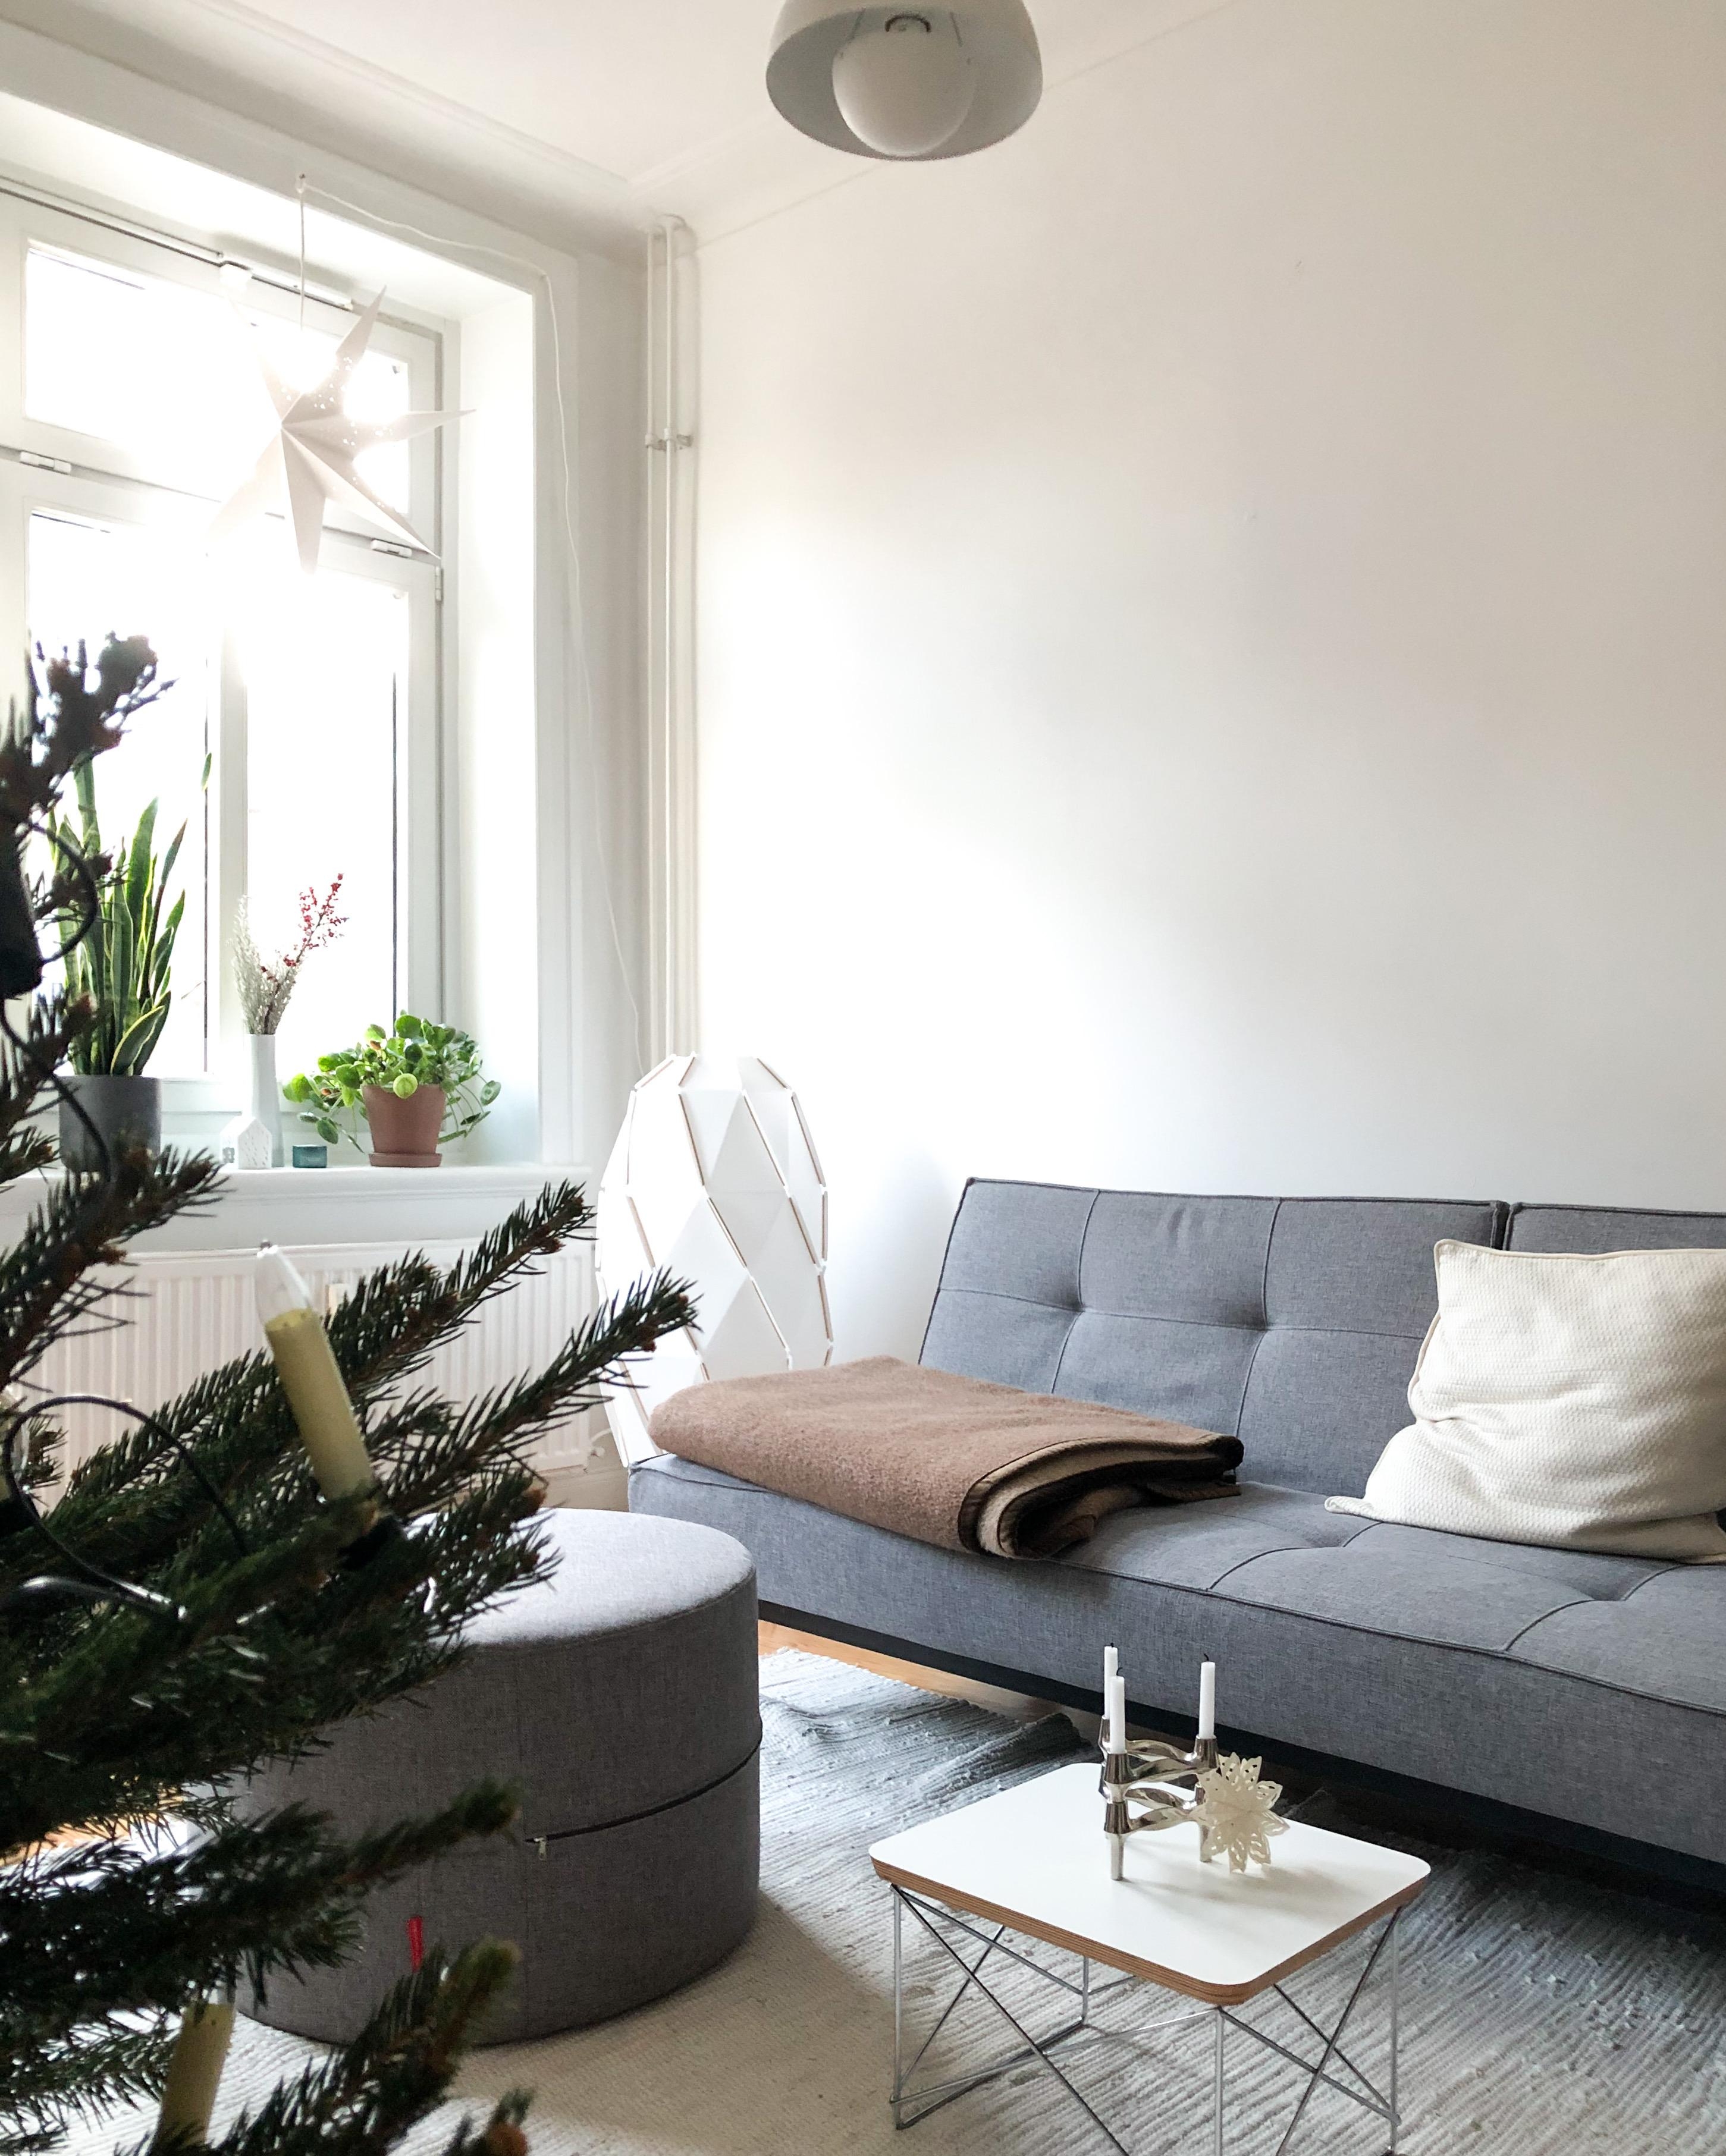 #zuhauseweihnachten #wohnzimmer #couchstyle #whiteinterior #sofaliebe #altbauliebe #tannenbaum #vitra